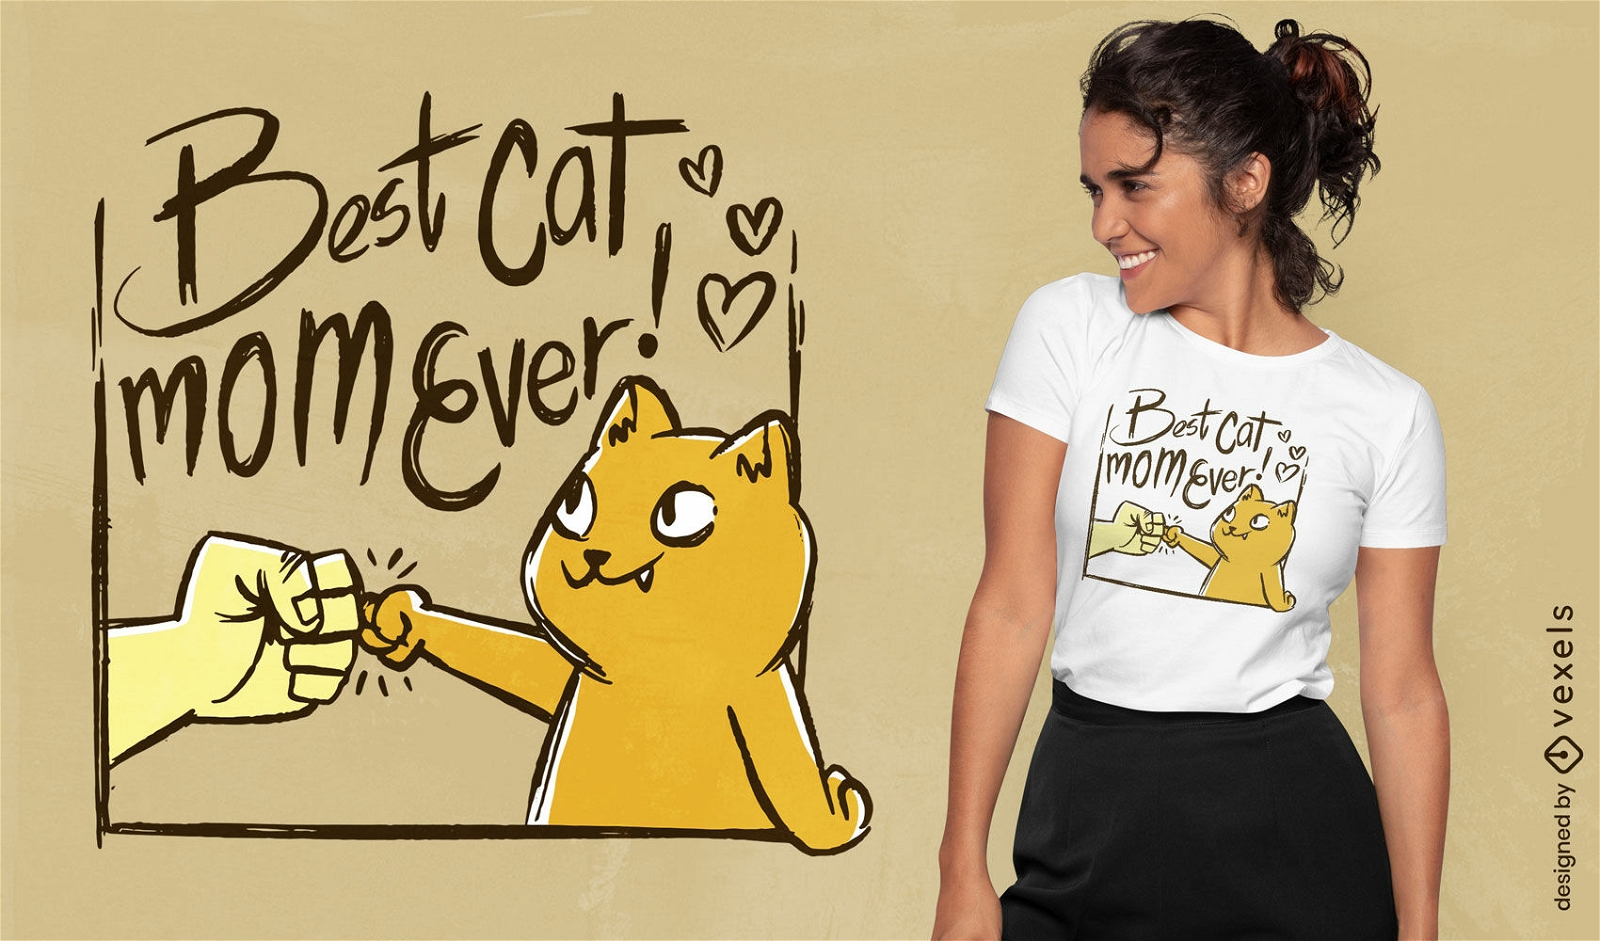 Melhor design de camiseta com cita??o de m?e de gato